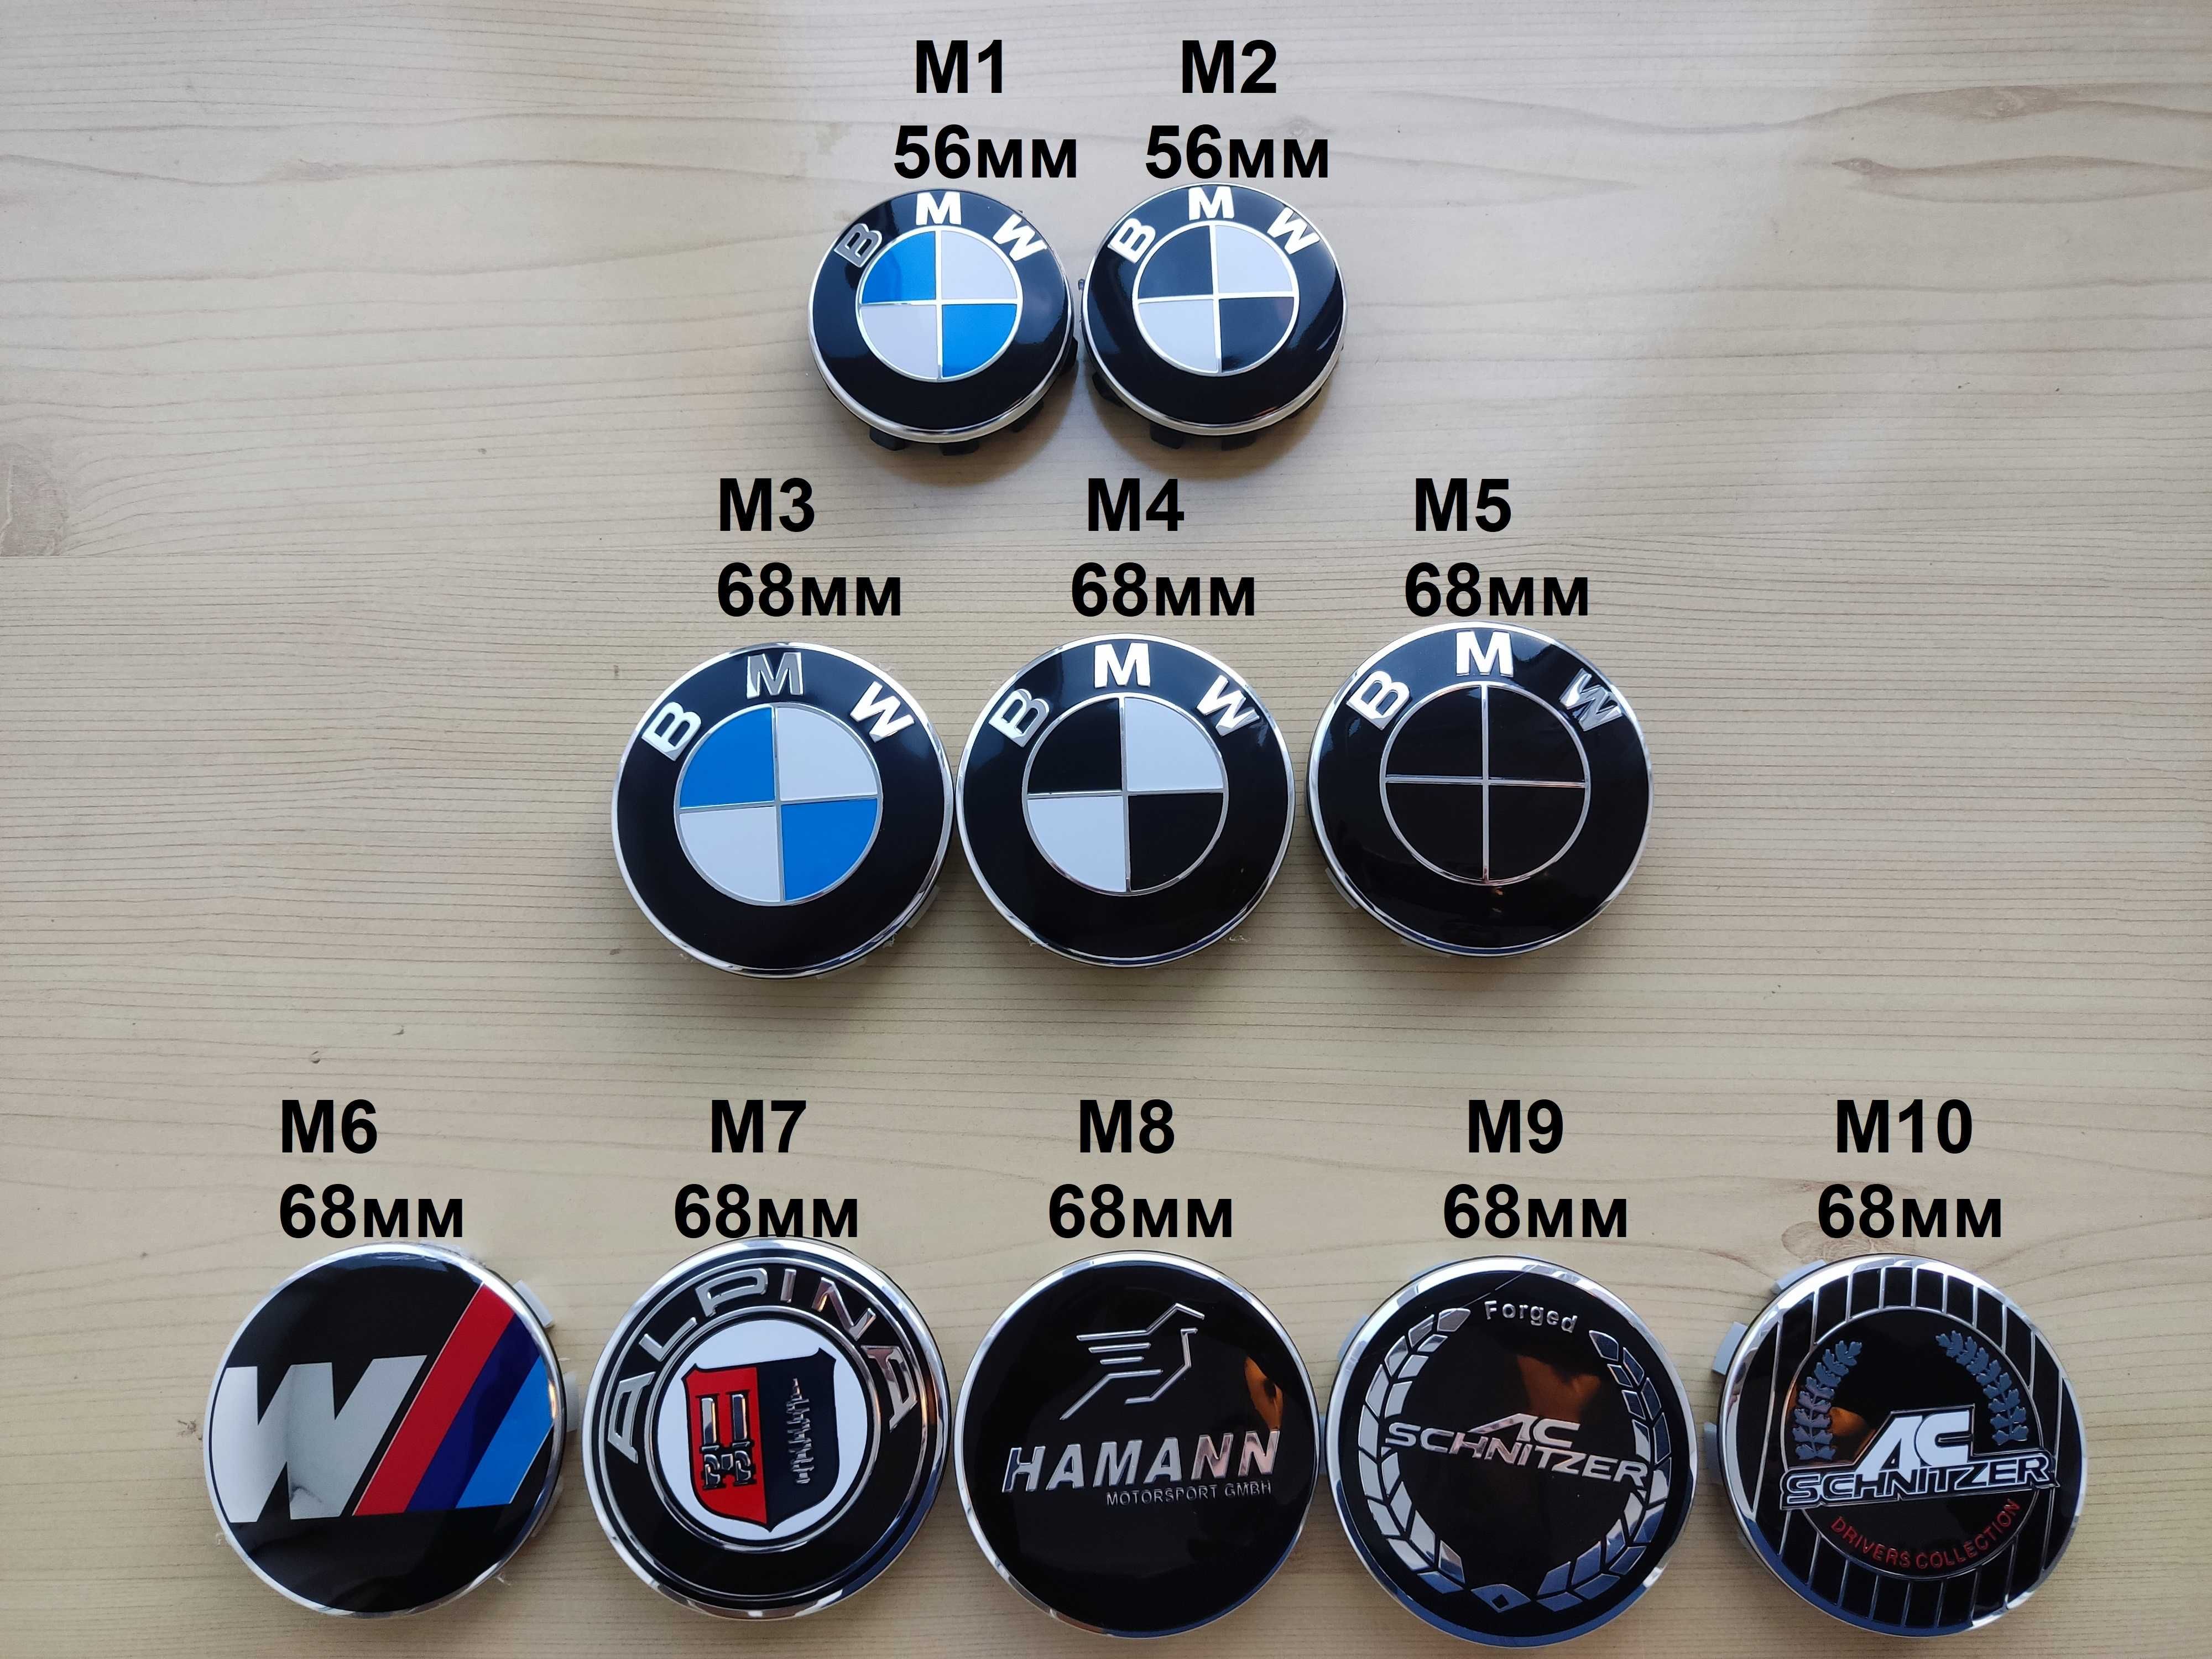 Капачки за джанти BMW БМВ